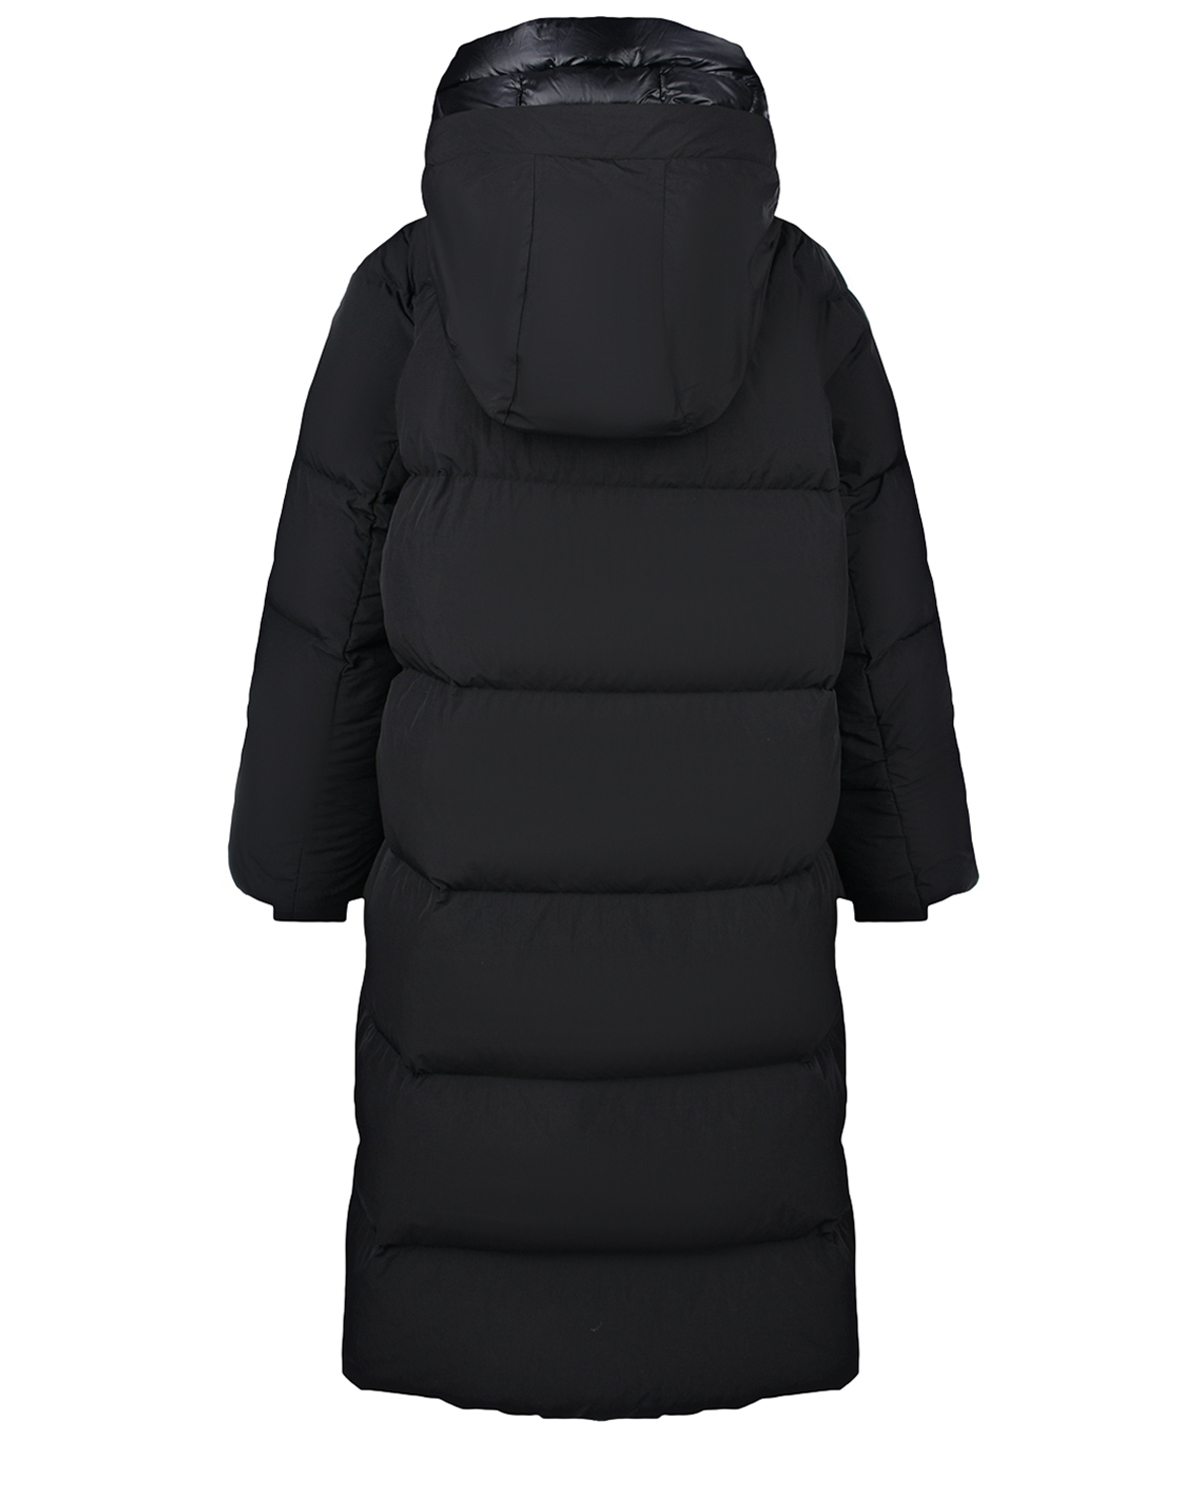 Черное стеганое пальто с капюшоном Freedomday, размер 42, цвет черный - фото 2